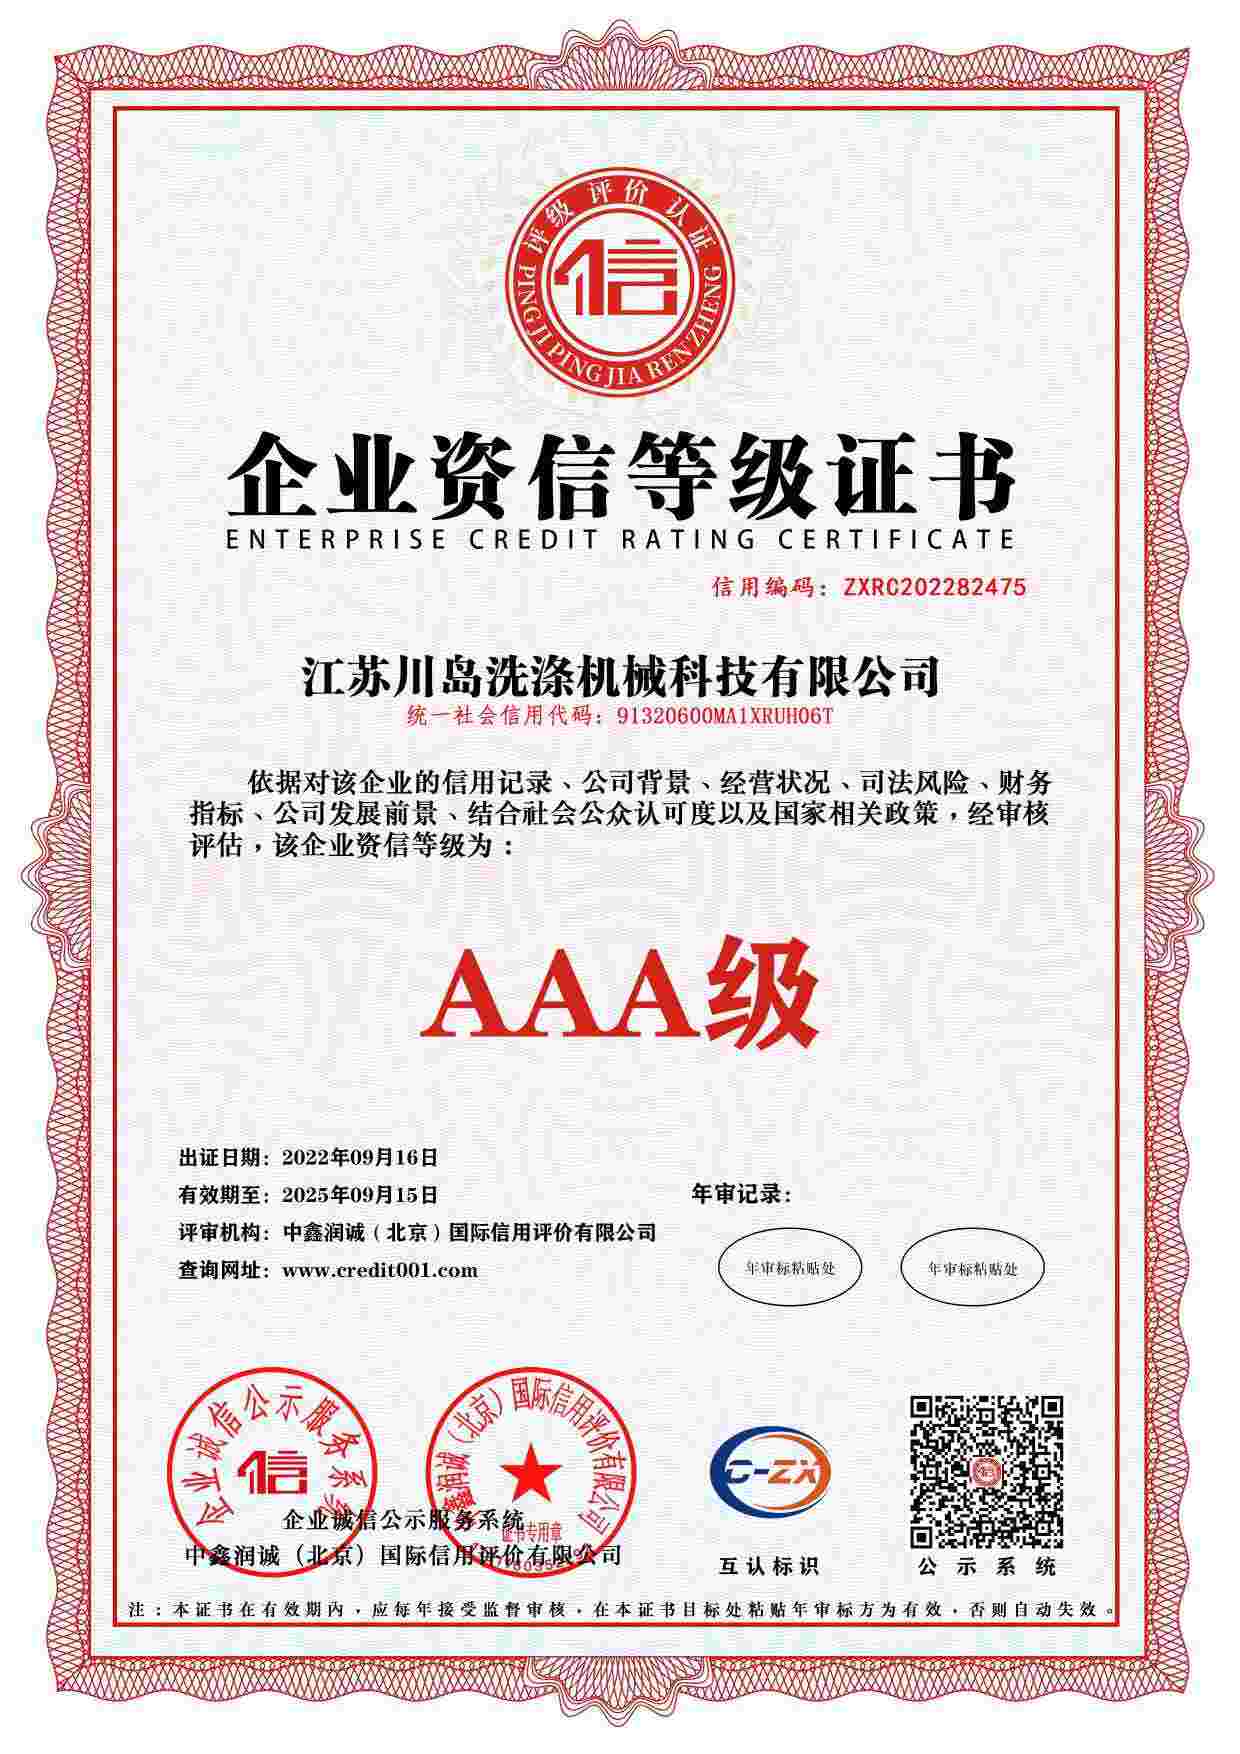 Сертификат кредитного рейтинга предприятия (2)